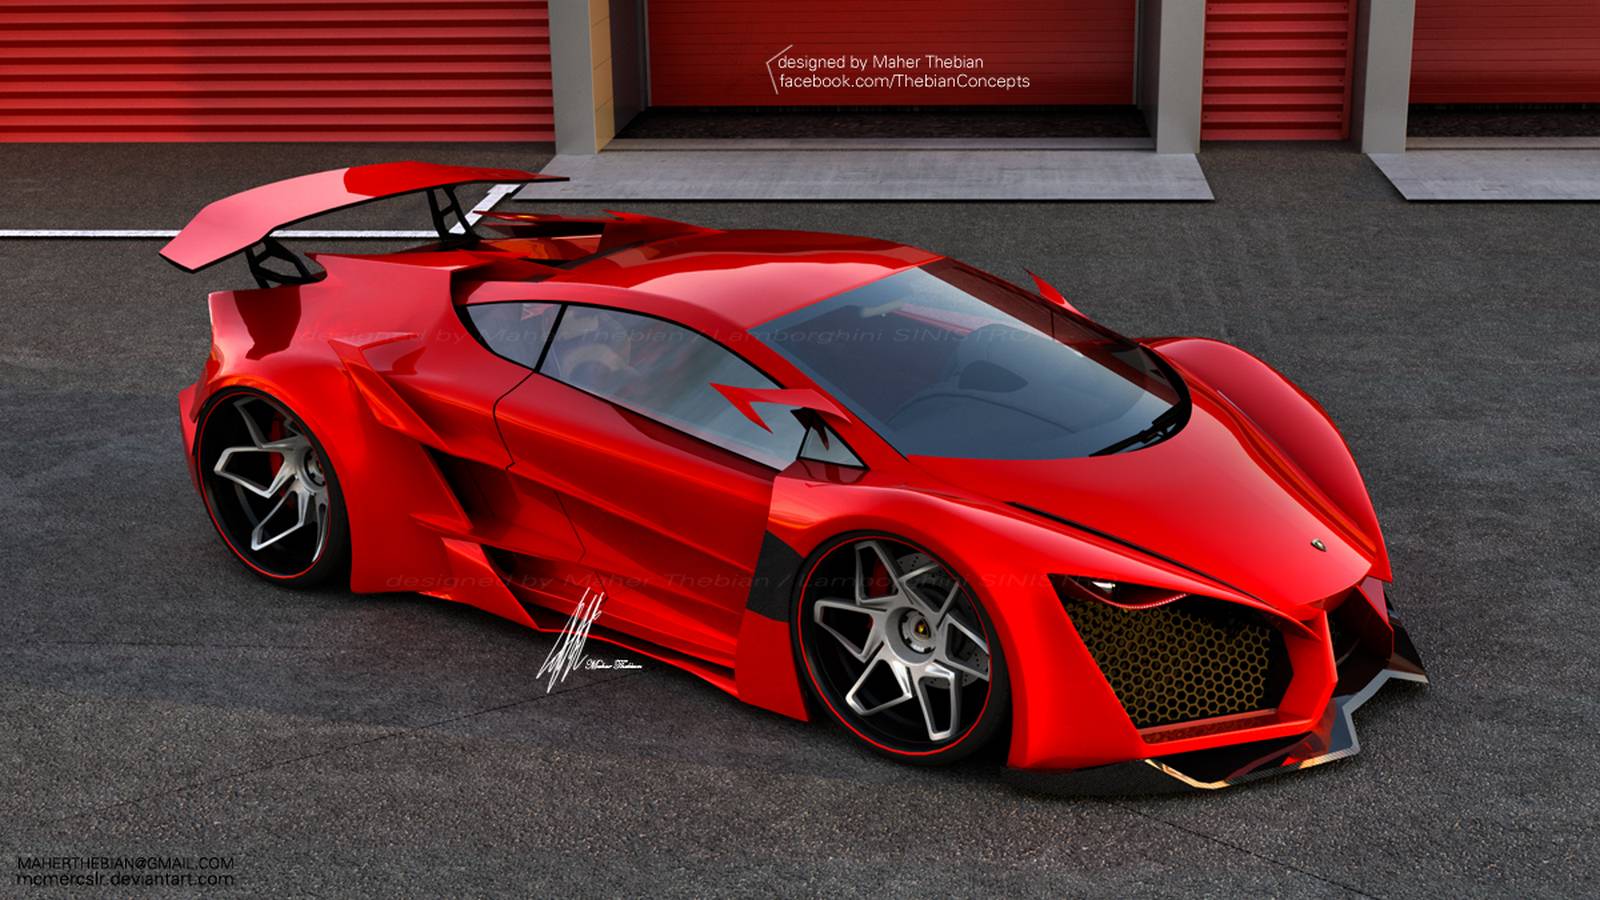 The New Lamborghini Concept Sinistro